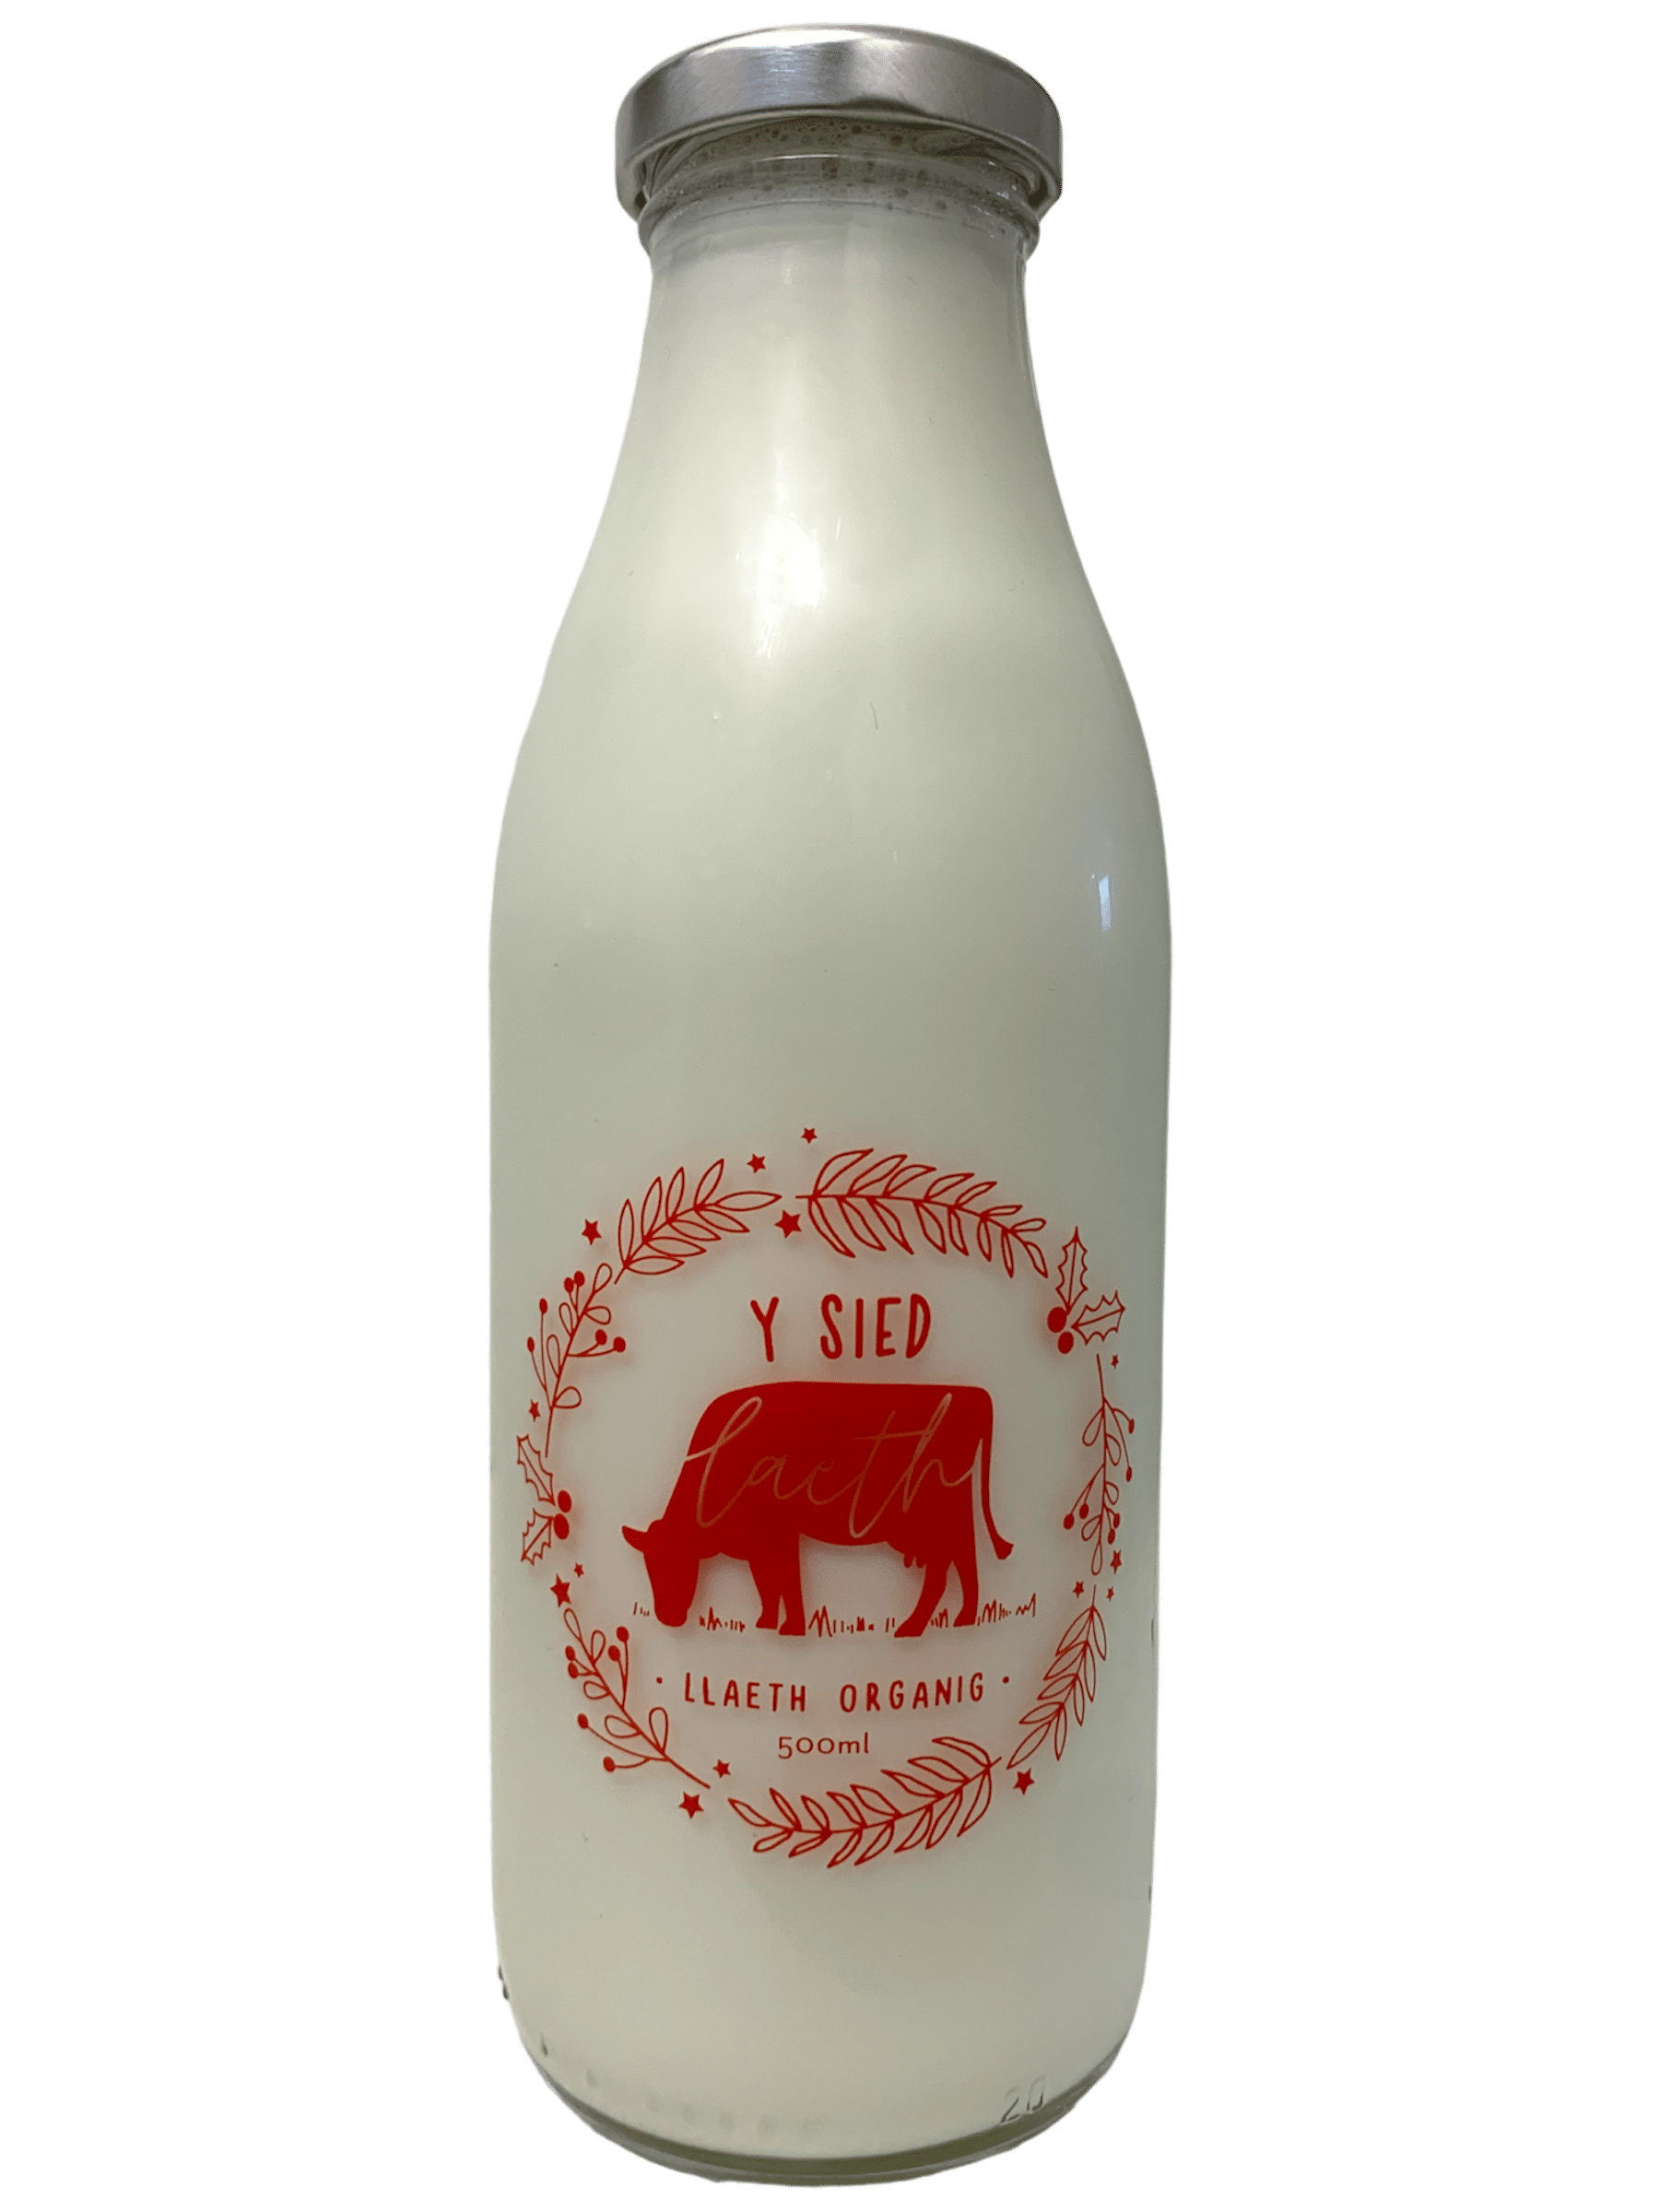 Y Sied Dairy - www.Kelis.info #KelisTheBottleBank